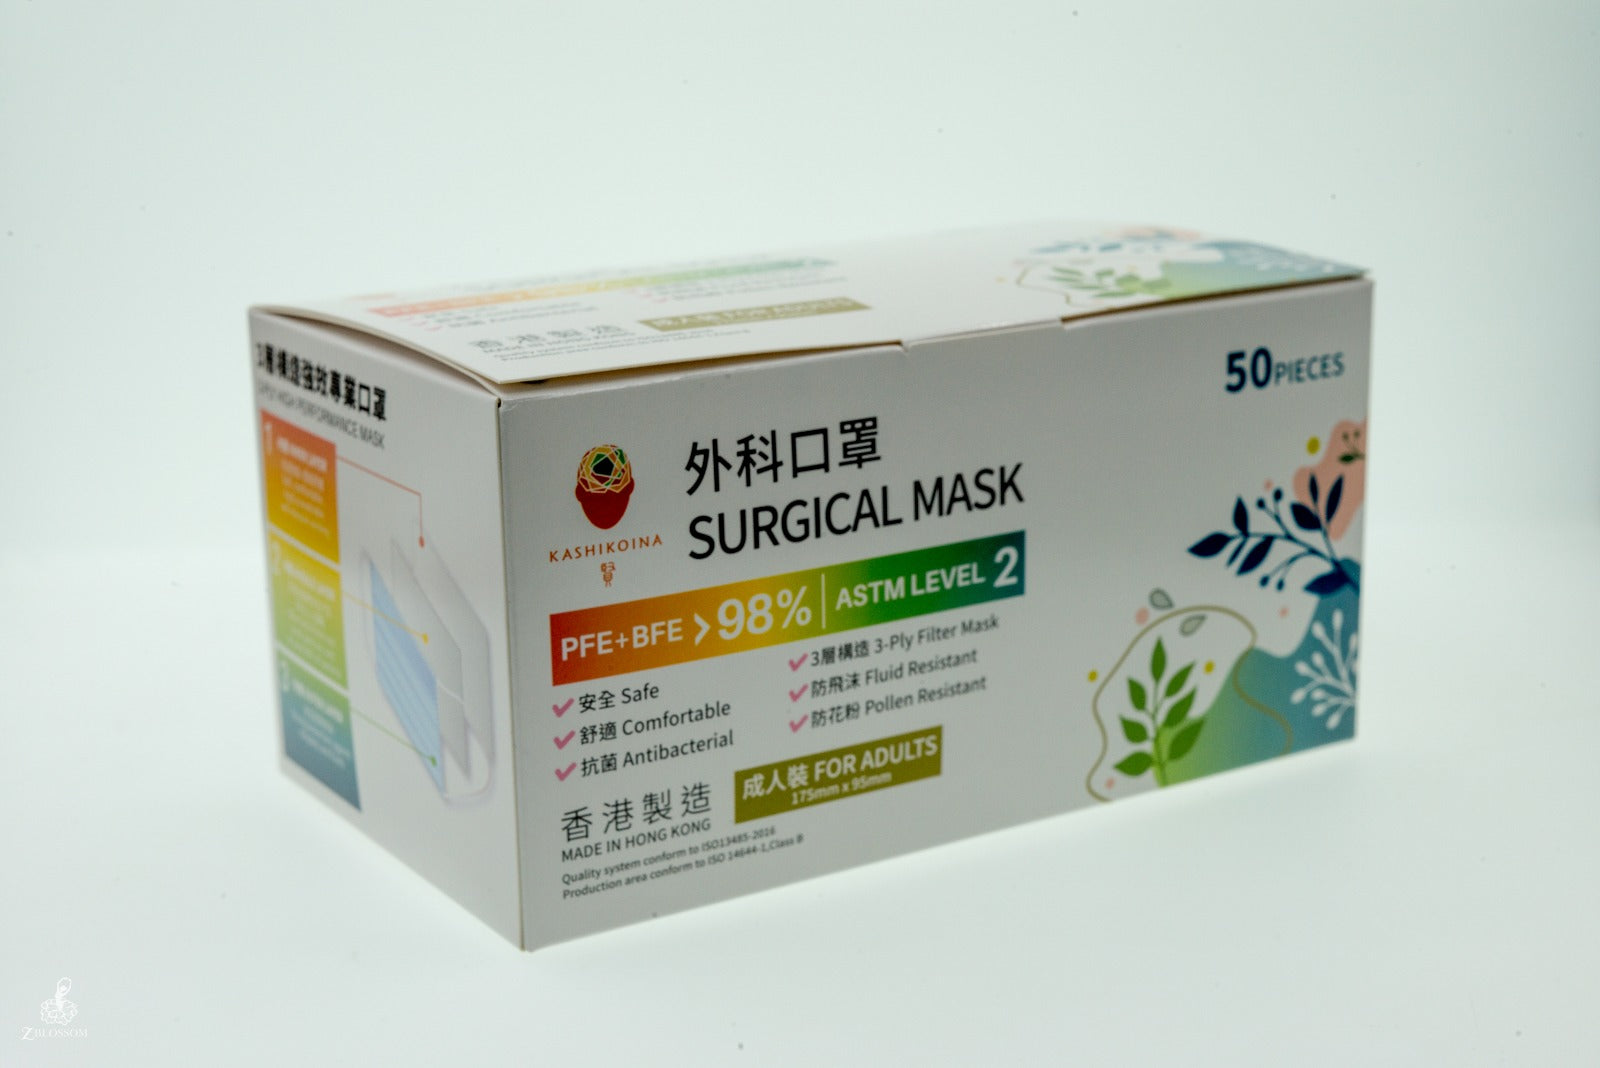 Kashikoina Surgical Mask (ASTM Level 2) - Adult Size